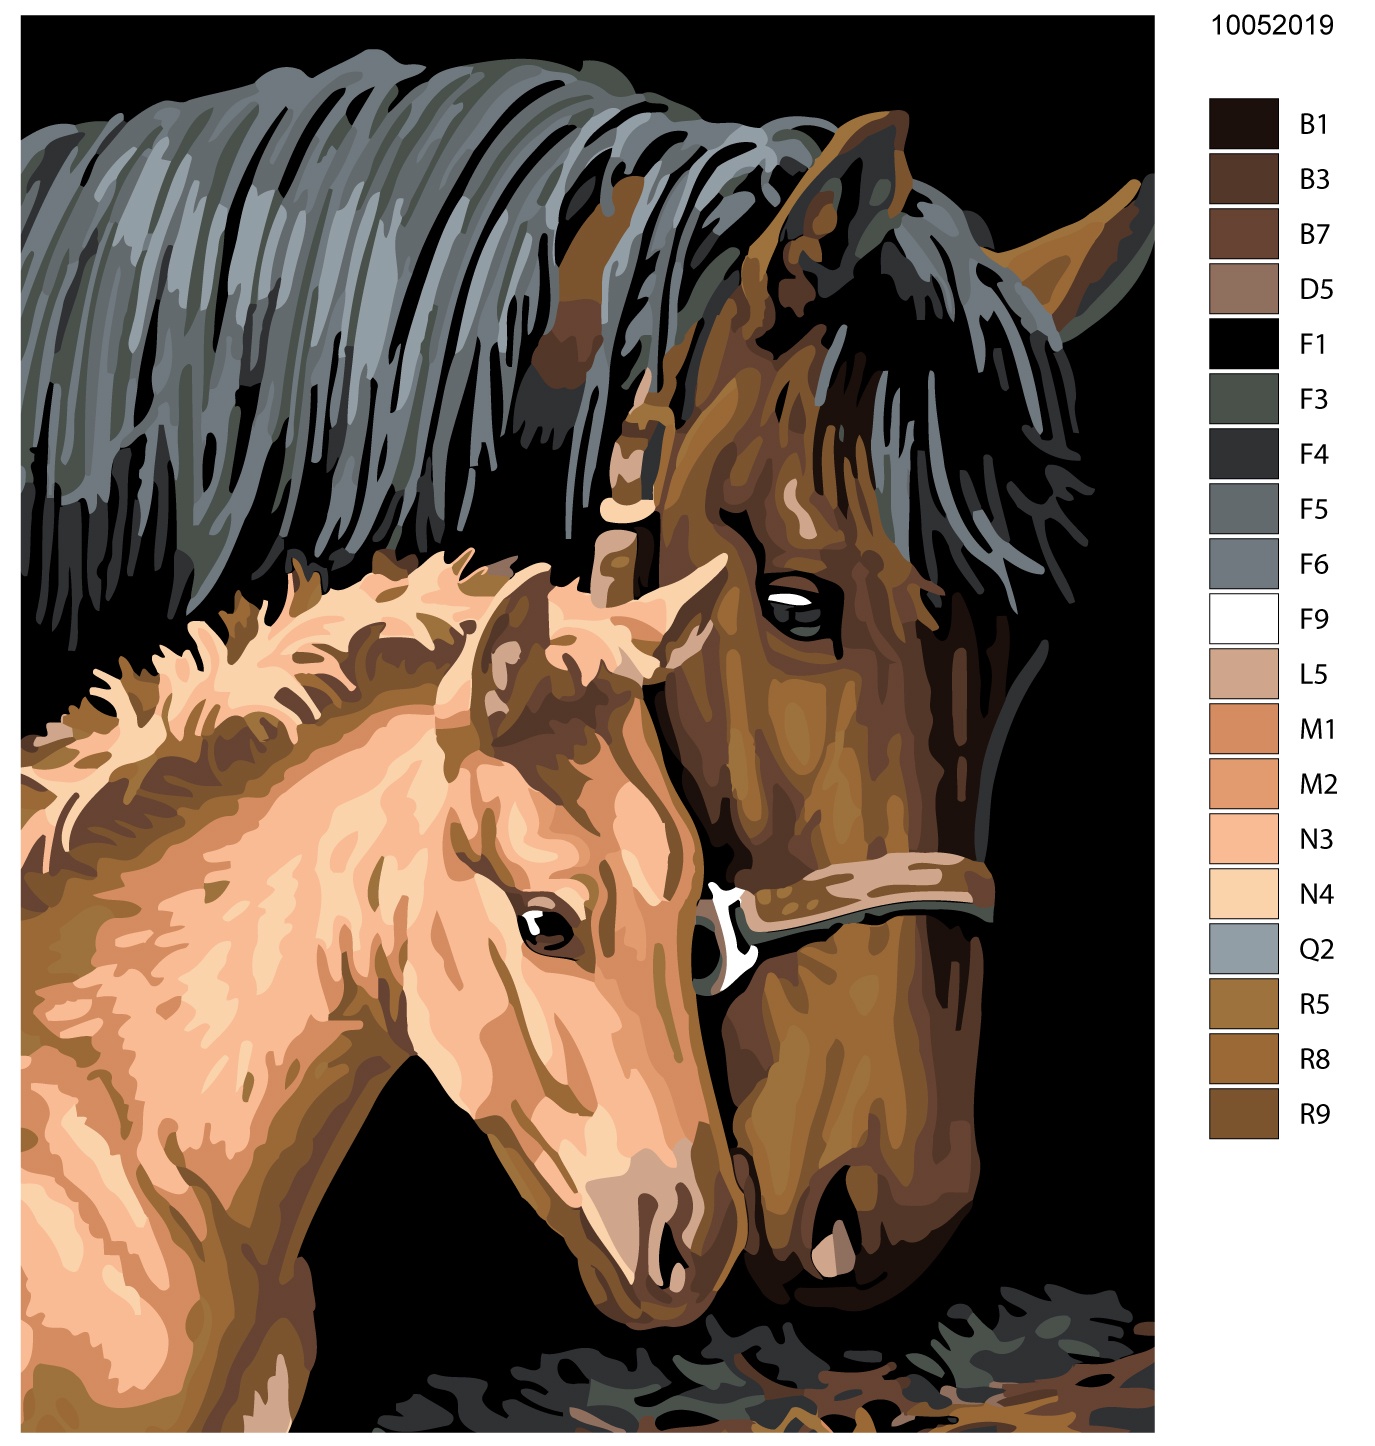 Картина лошадь с жеребенком